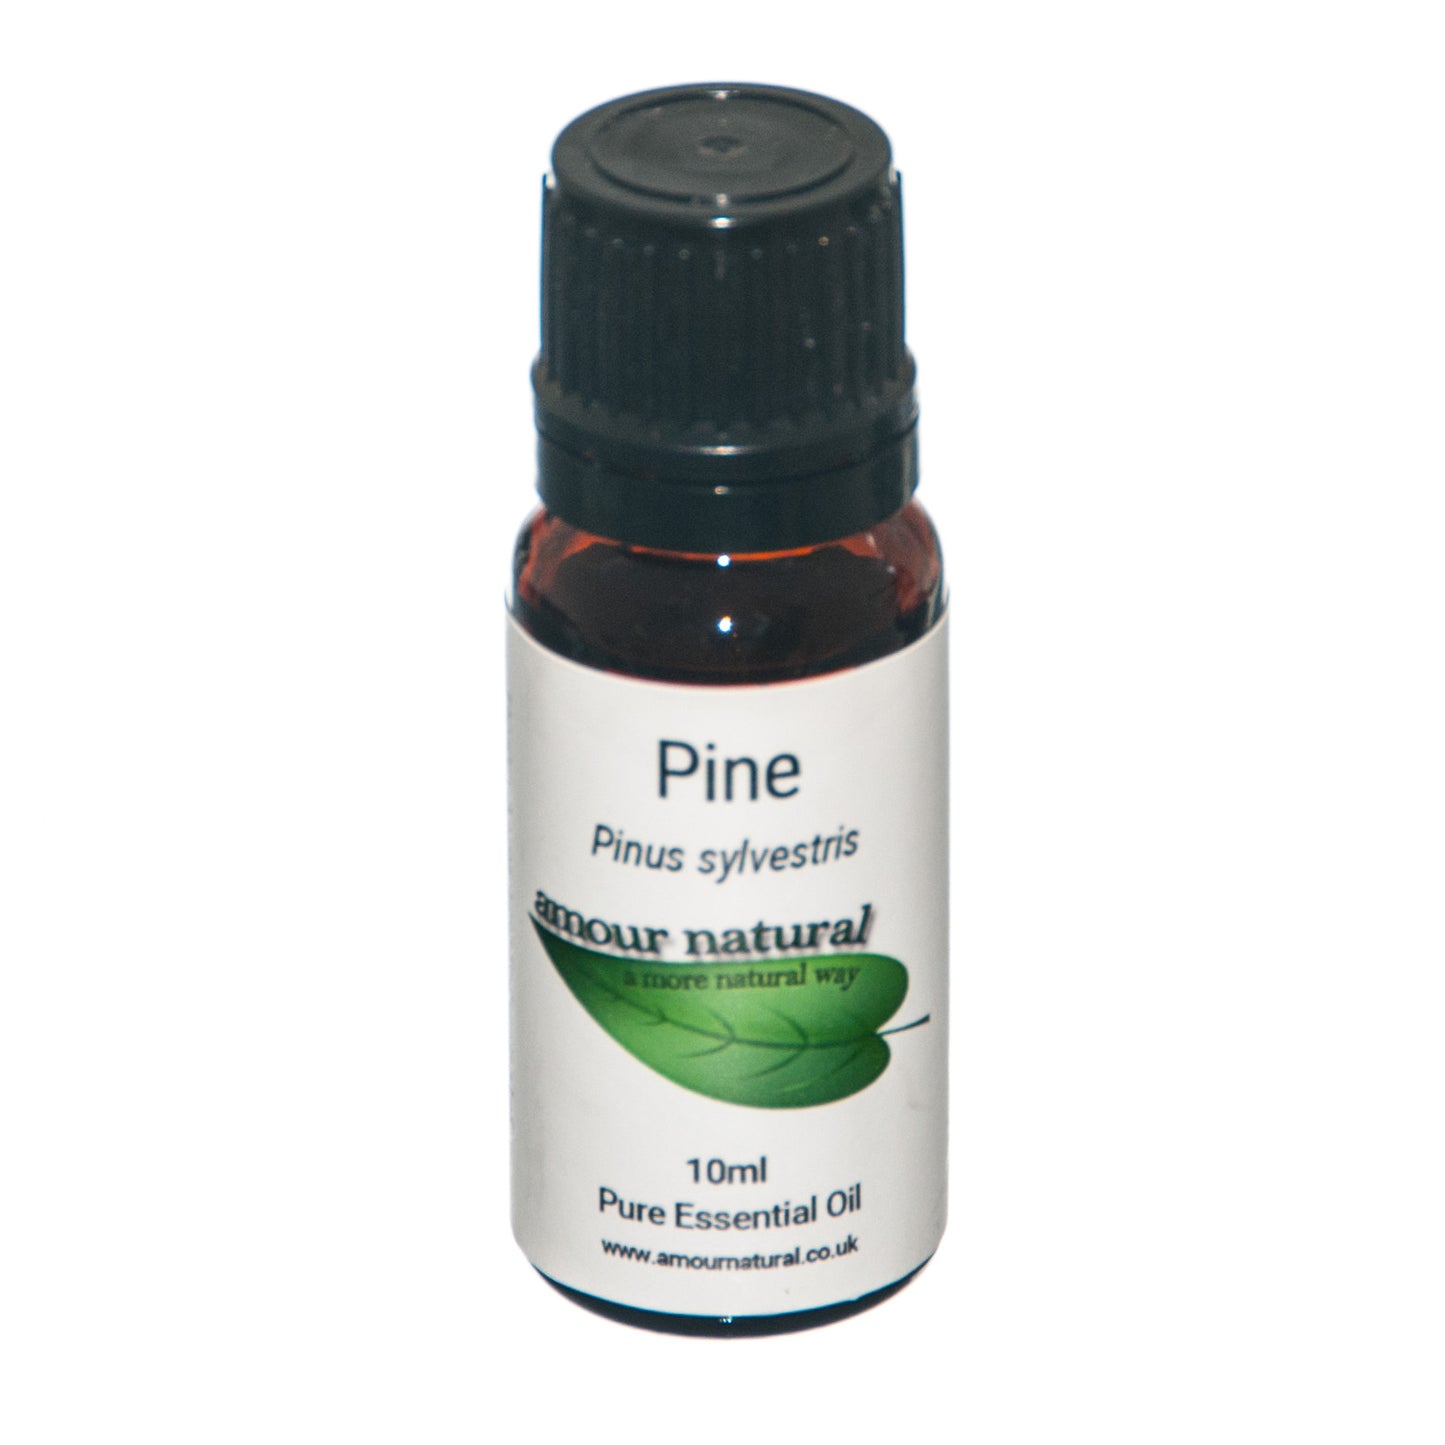 Pine - Essential Oil